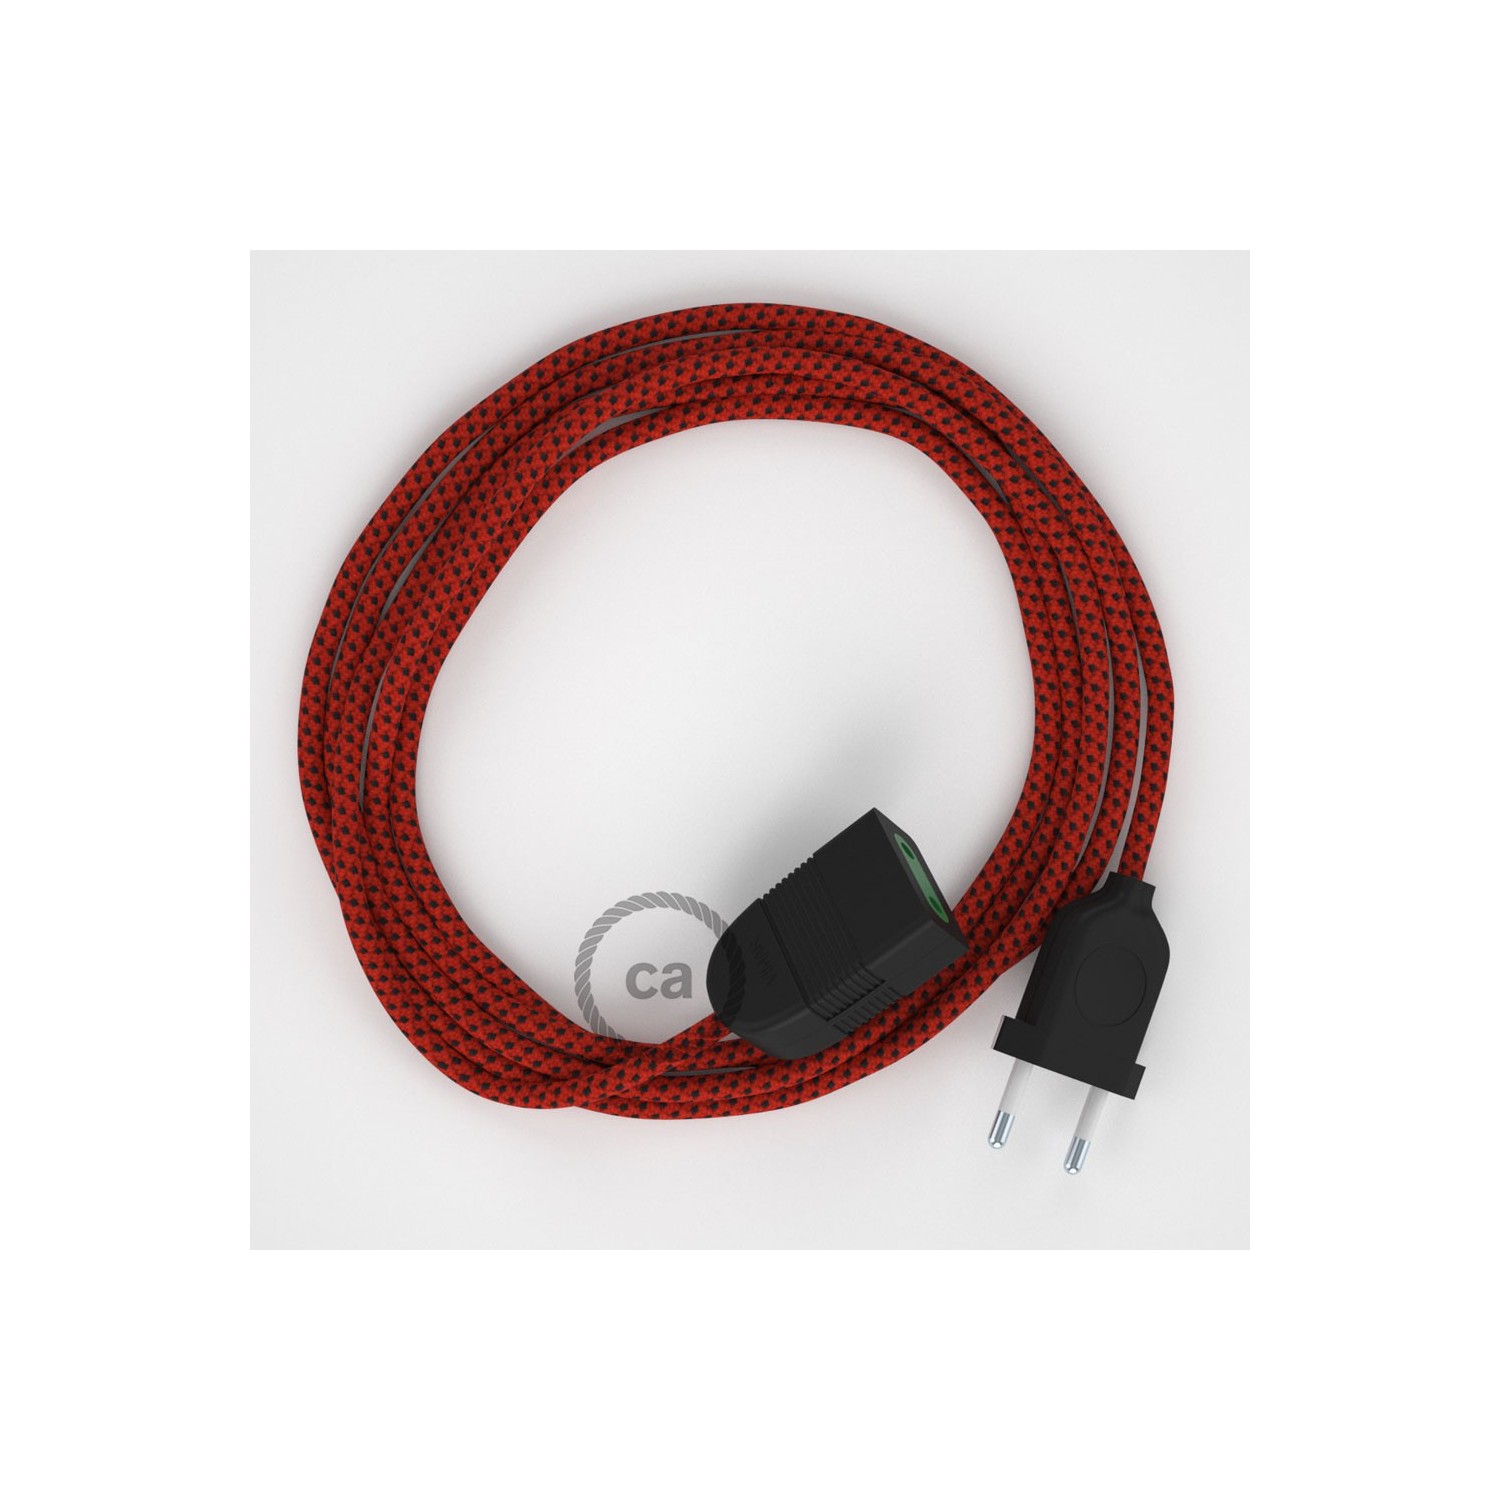 Podaljševalni kabel za napajanje (2P 10A) rdeči vrag rejon RT94 - Made in Italy